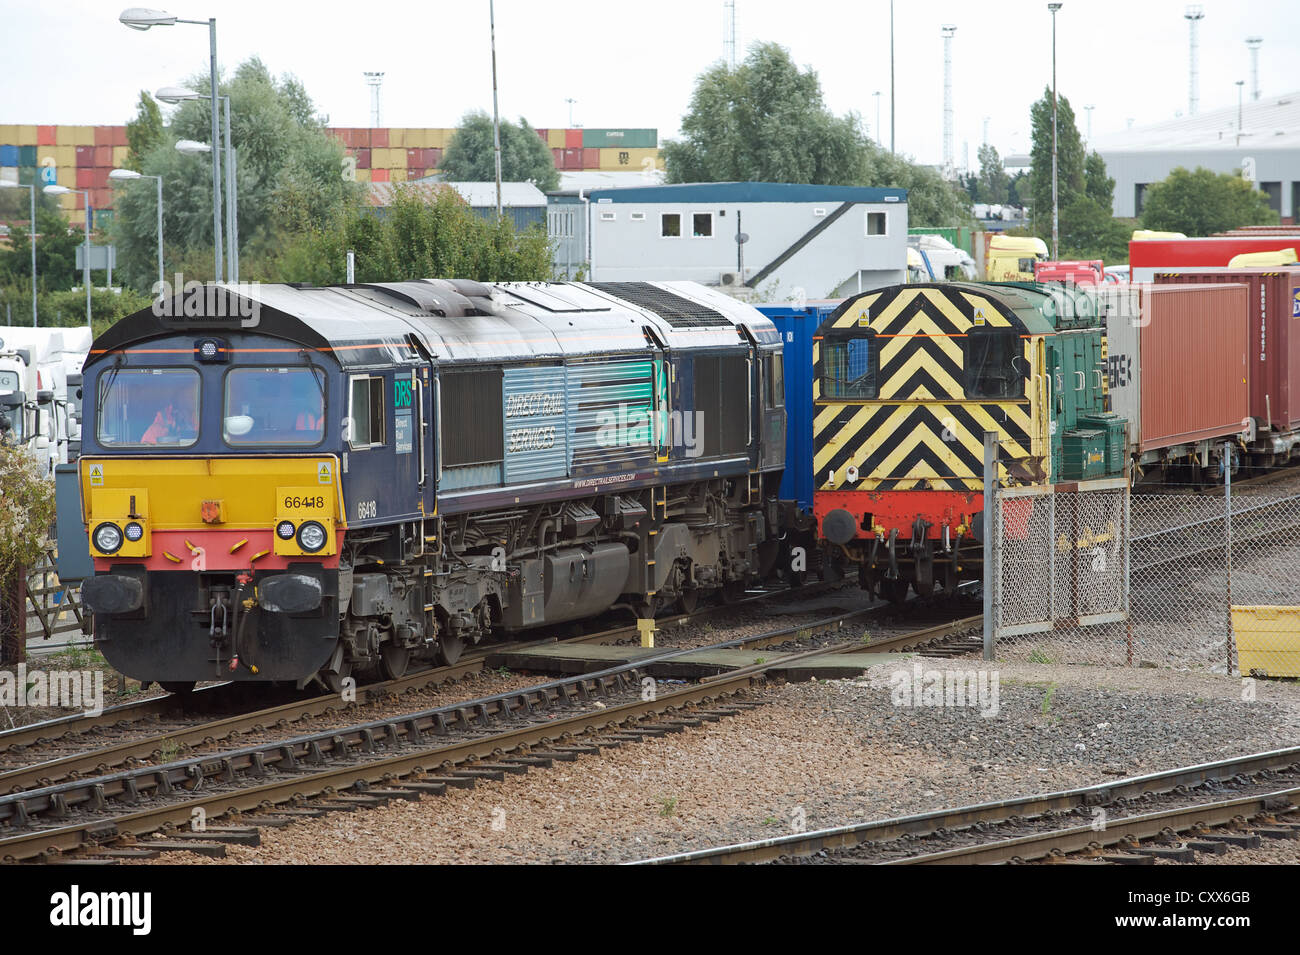 Les DRS (Direct Rail Services) train de fret de quitter le terminal ferroviaire du nord, port de Felixstowe, Suffolk, UK. Banque D'Images